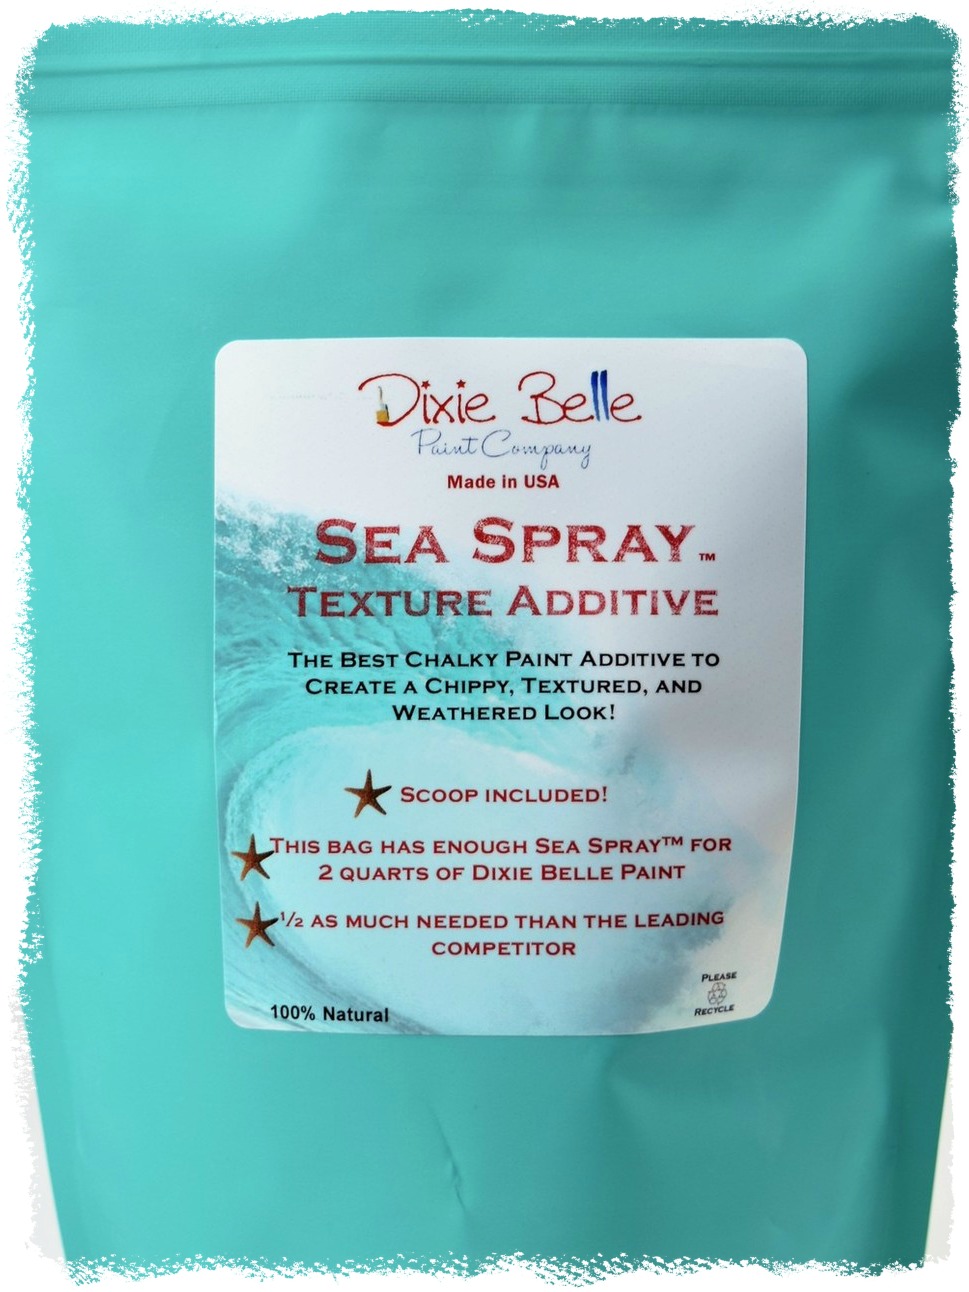 Sea Spray - Dixie Belle Paint Company